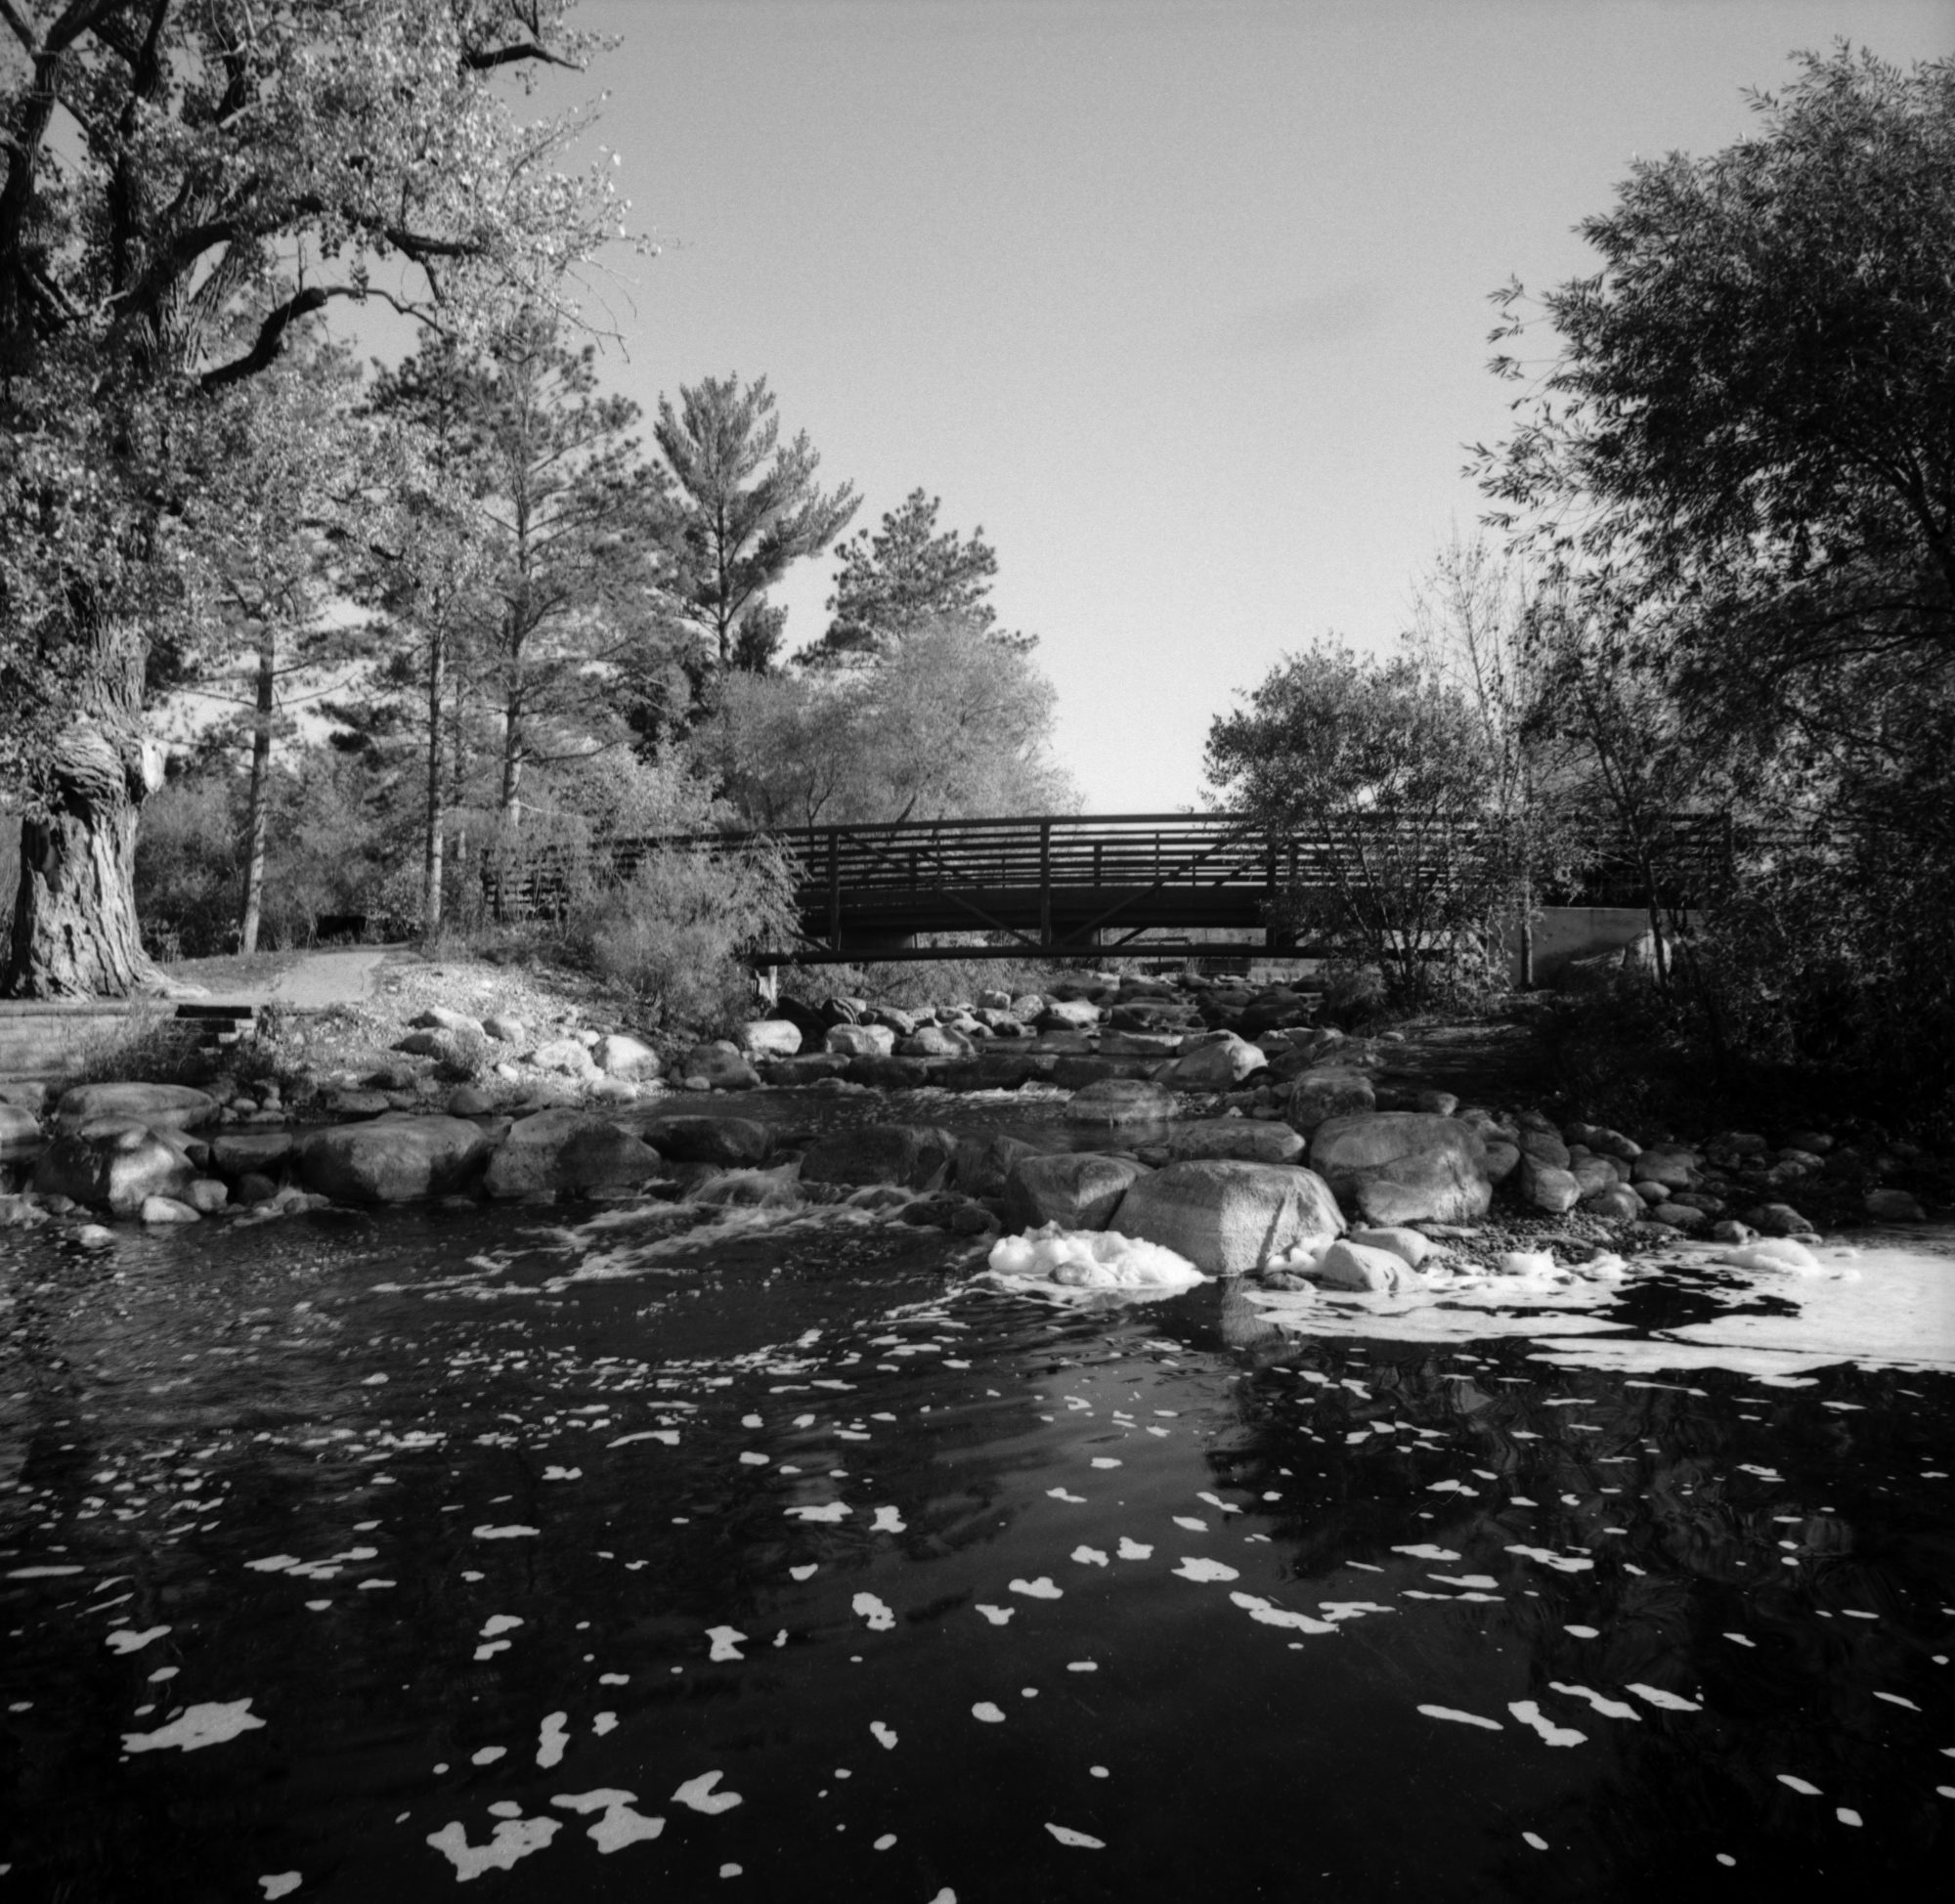 Bridge over stream in black and white (Pic: Aleks Usovich)